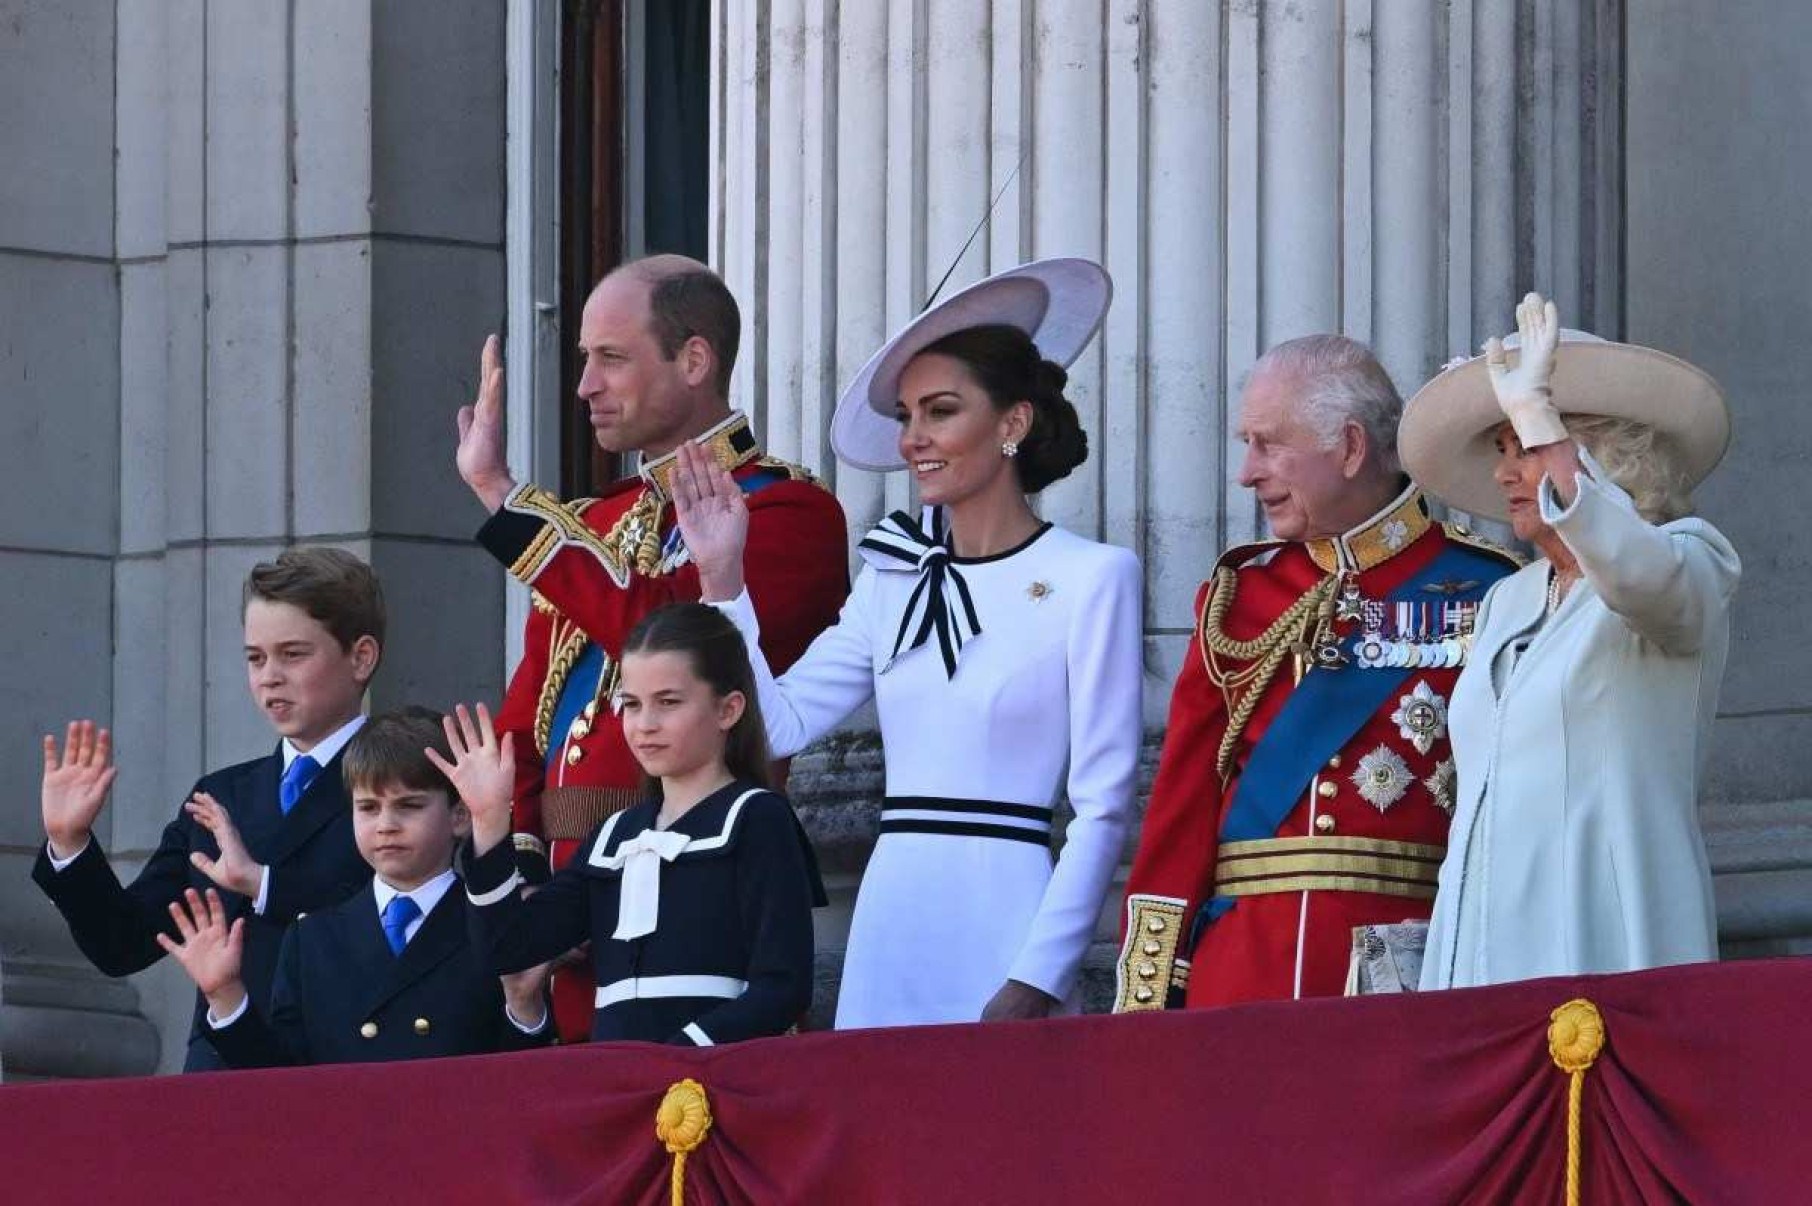 Kate, Princesa de Gales, está fazendo um retorno à vida pública pela primeira vez desde que foi diagnosticada com câncer, participando do desfile militar Trooping the Color no centro de Londres.